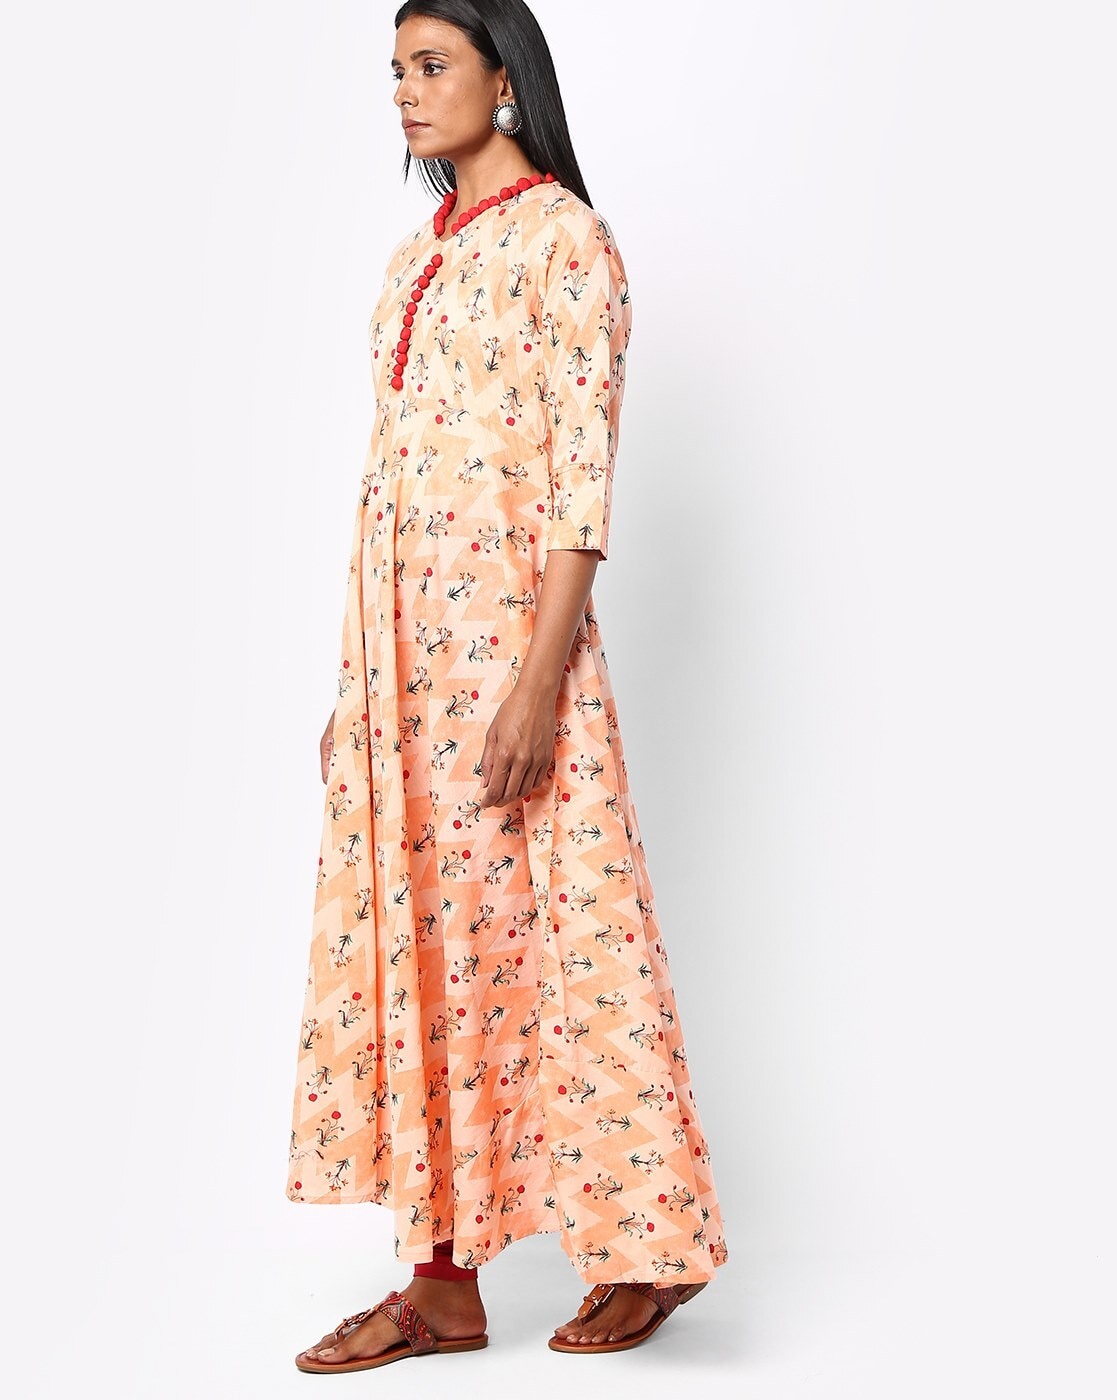 Nayo Women Off White printed 3/4 sleeve Anarkali kurta – Nayo Clothing